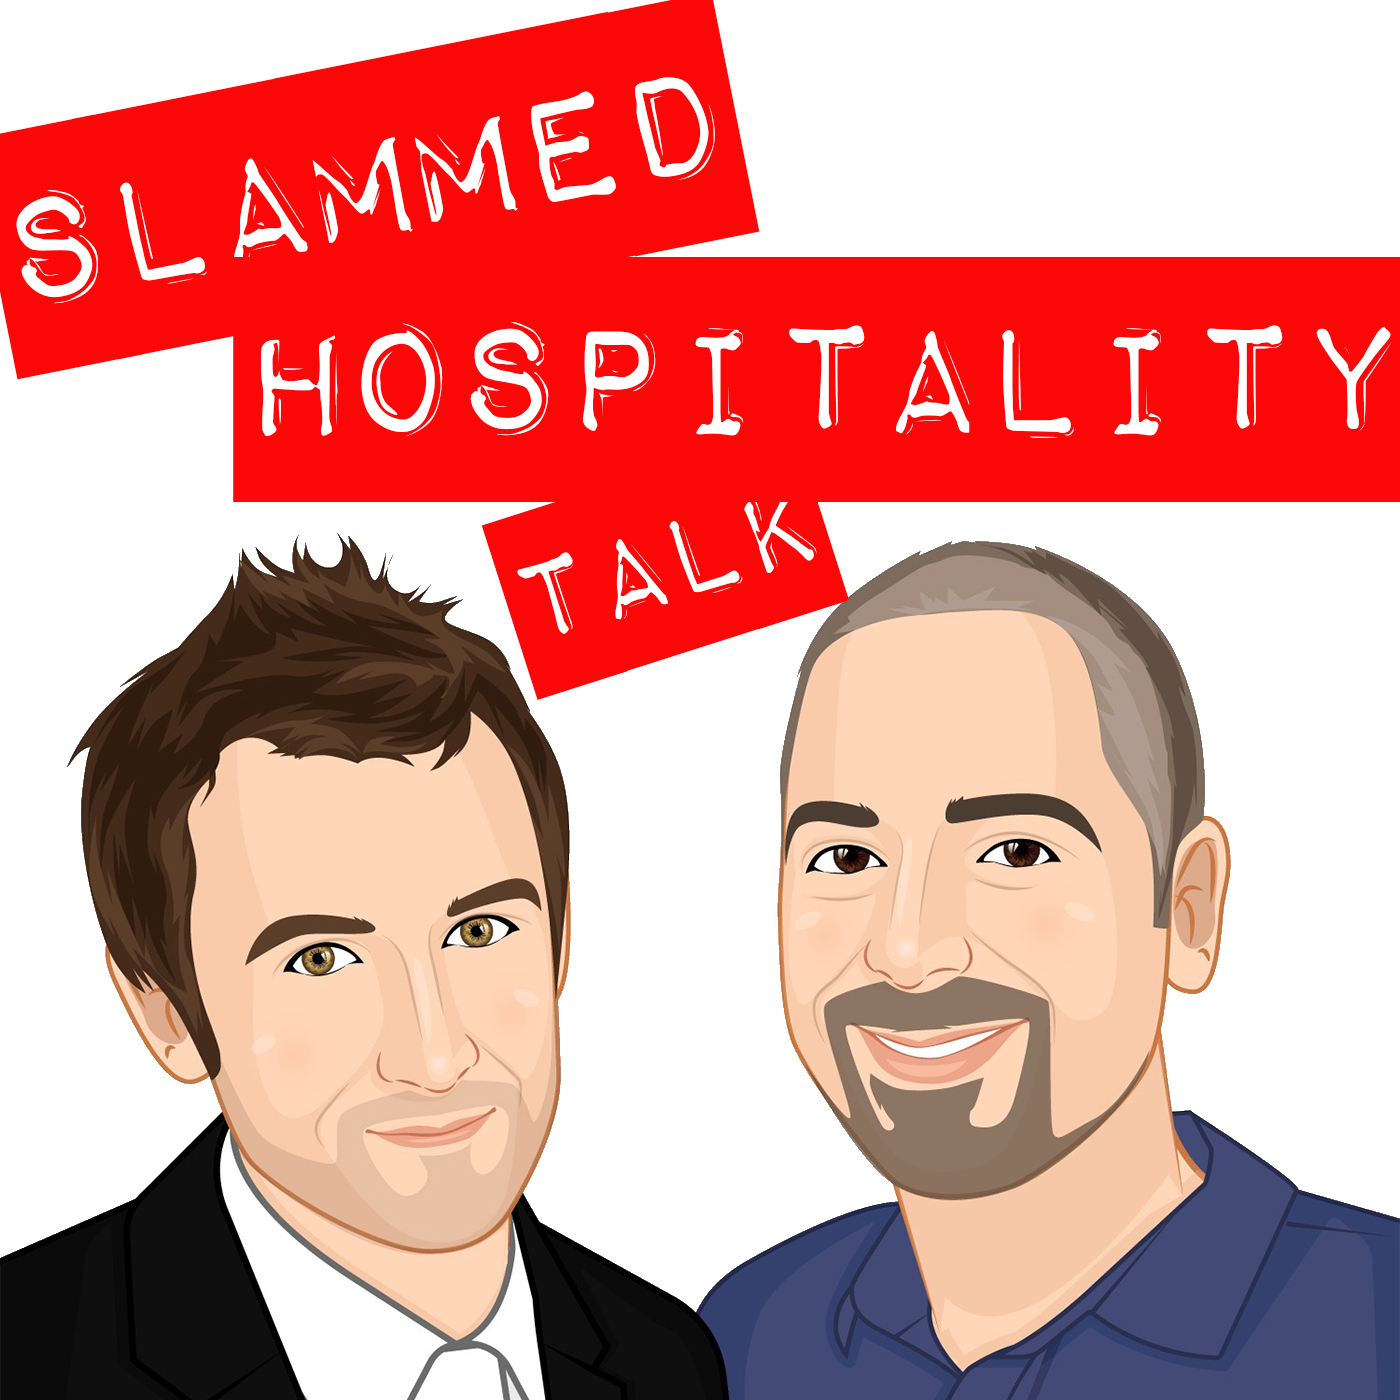 Slammed Hospitality Talk